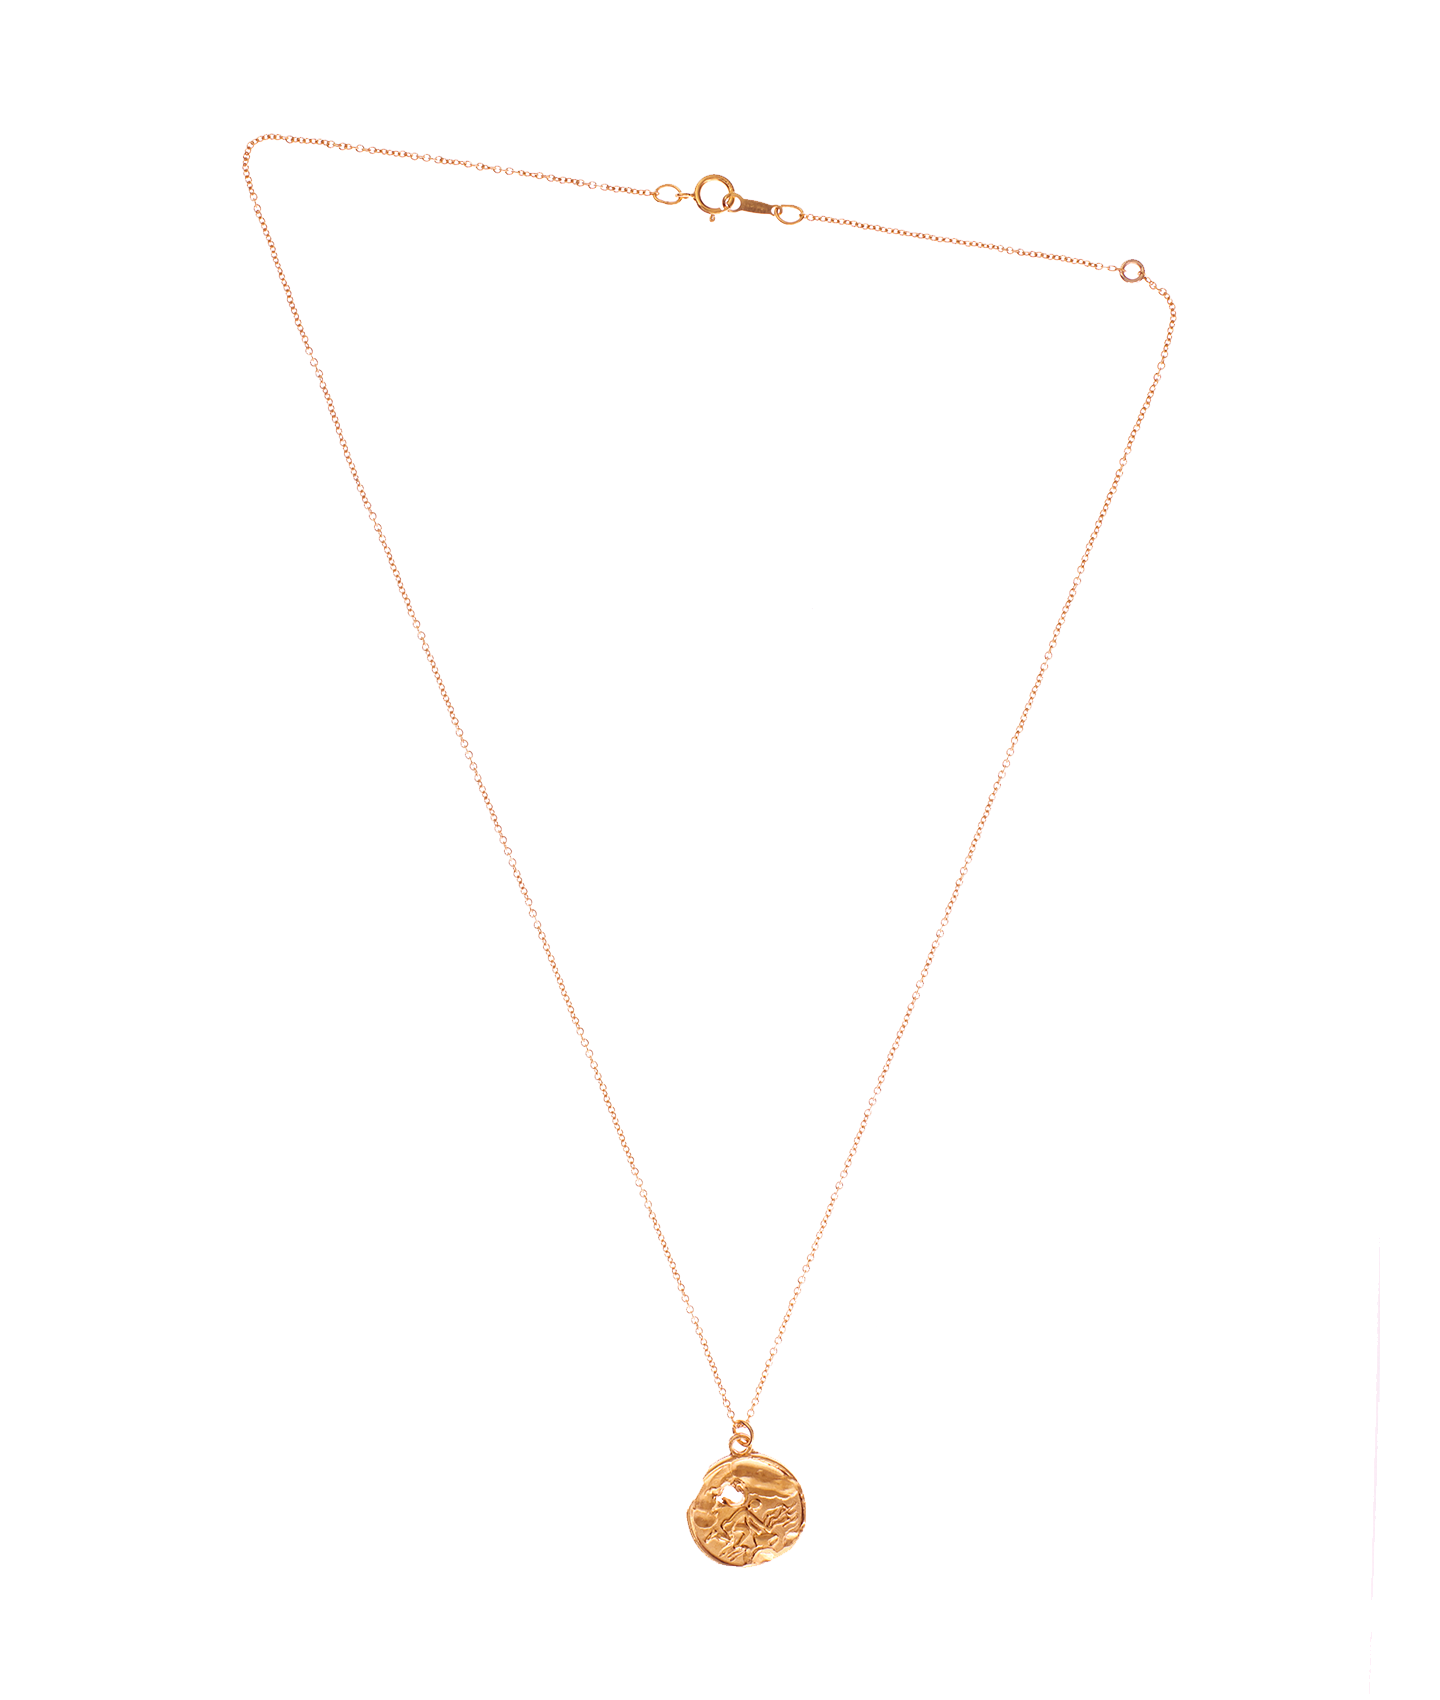 The Aquarius Medallion